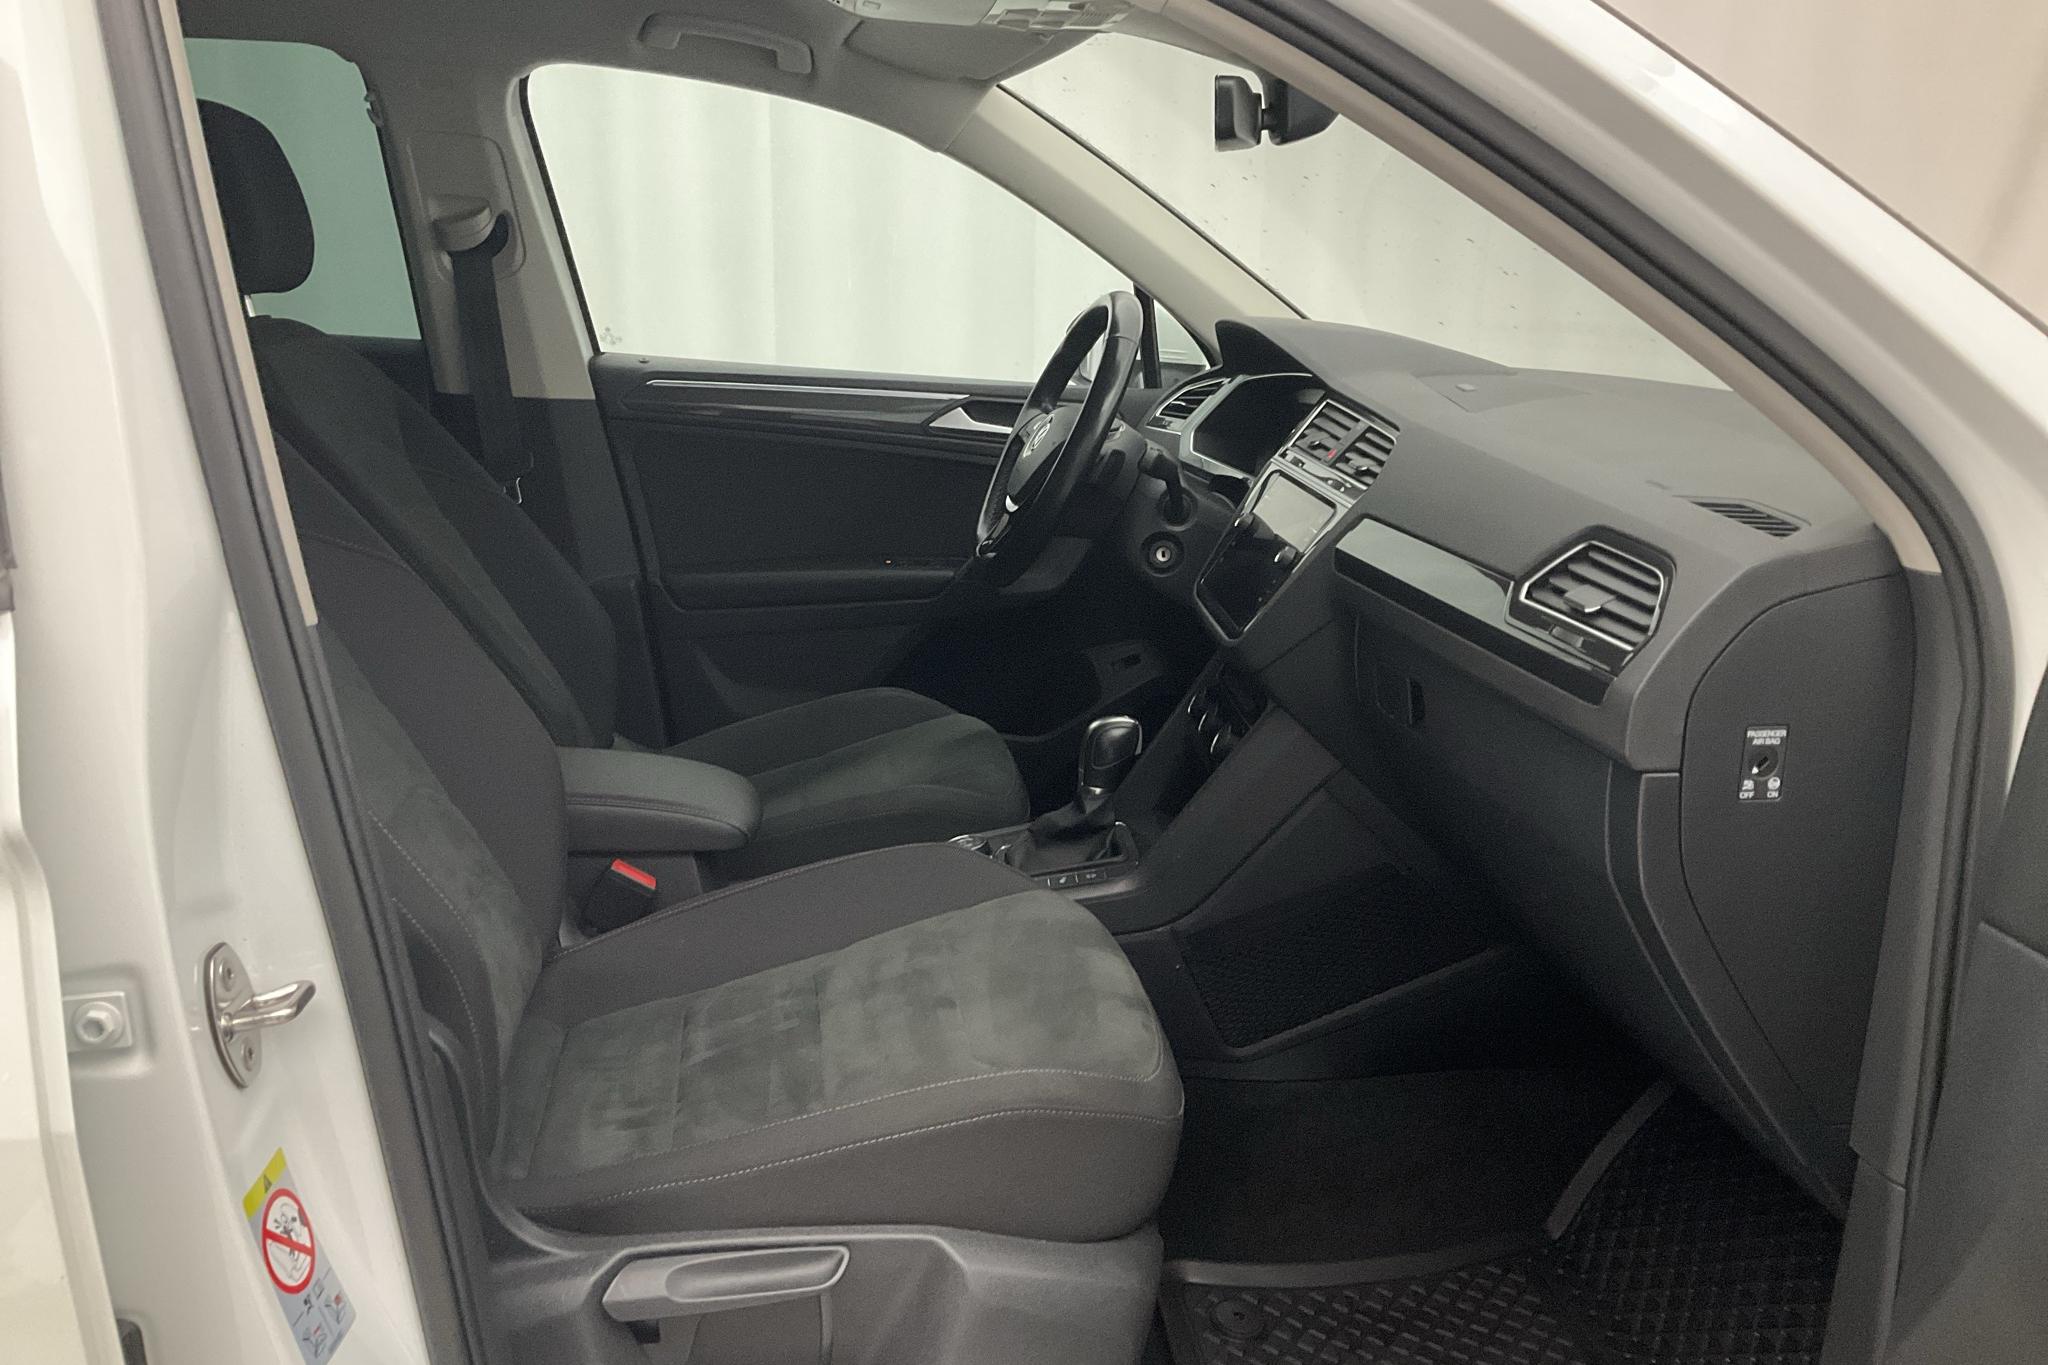 VW Tiguan 2.0 TDI 4MOTION (190hk) - 103 370 km - Automatic - white - 2019